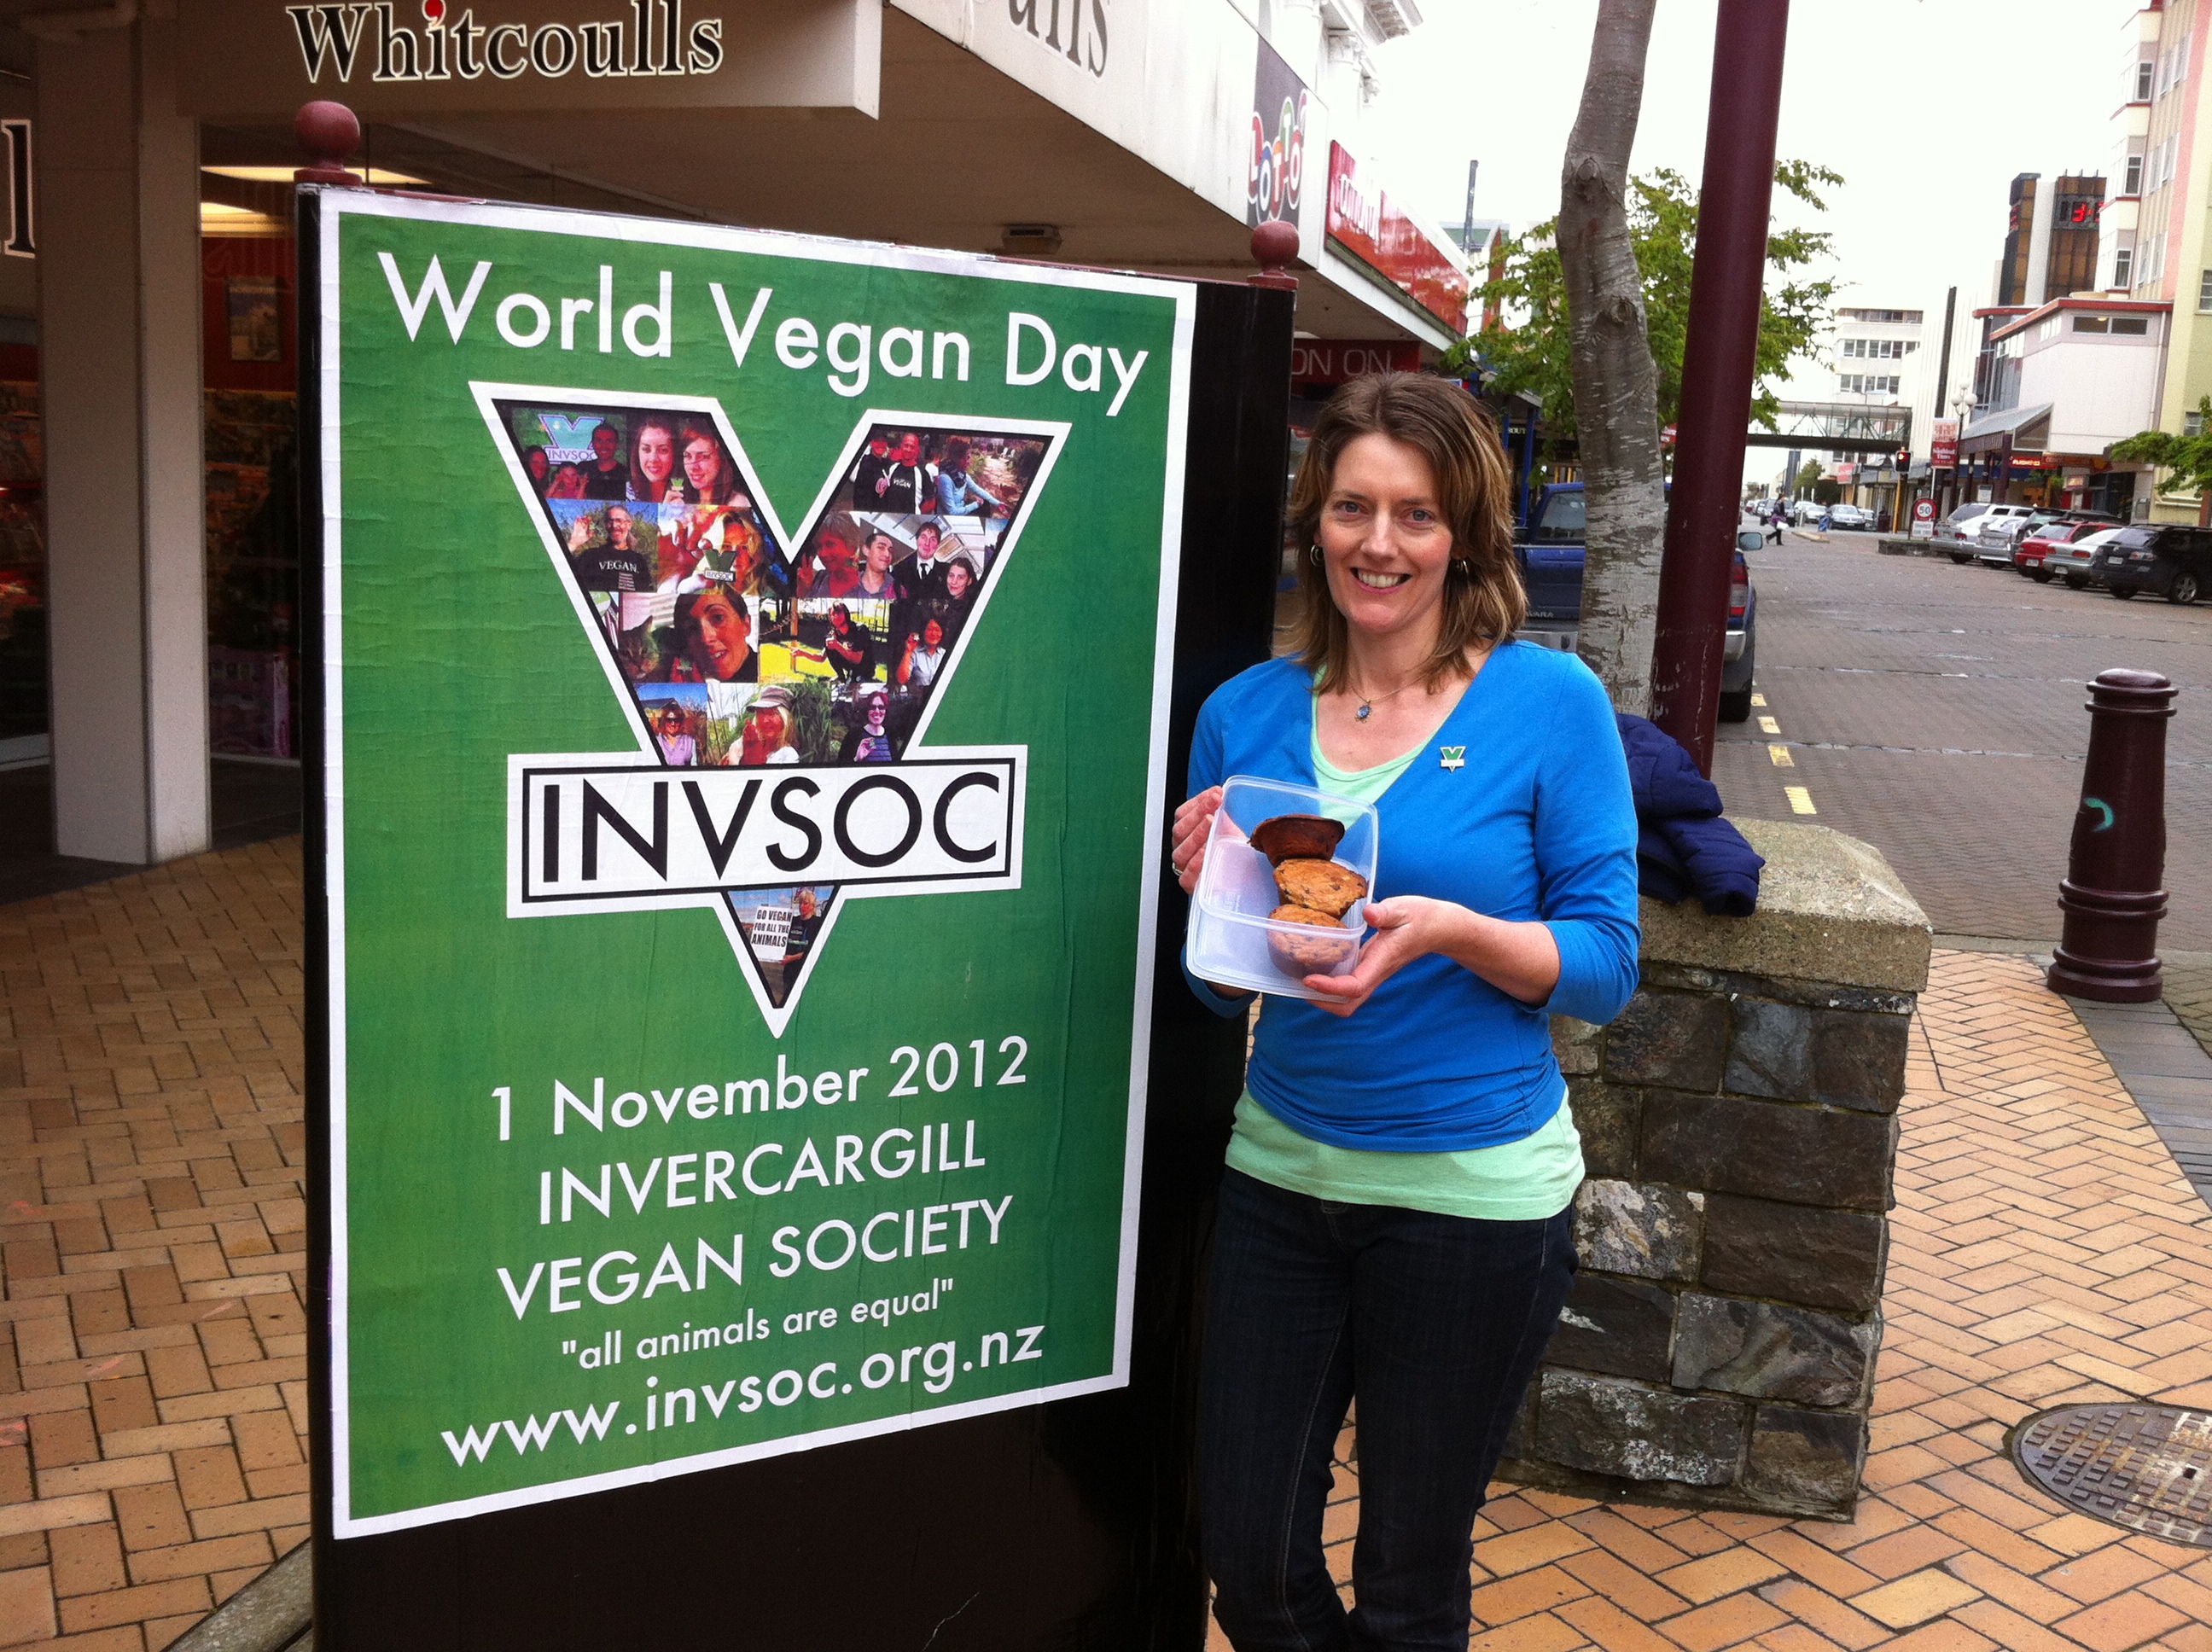 World Vegan Day baking giveaway